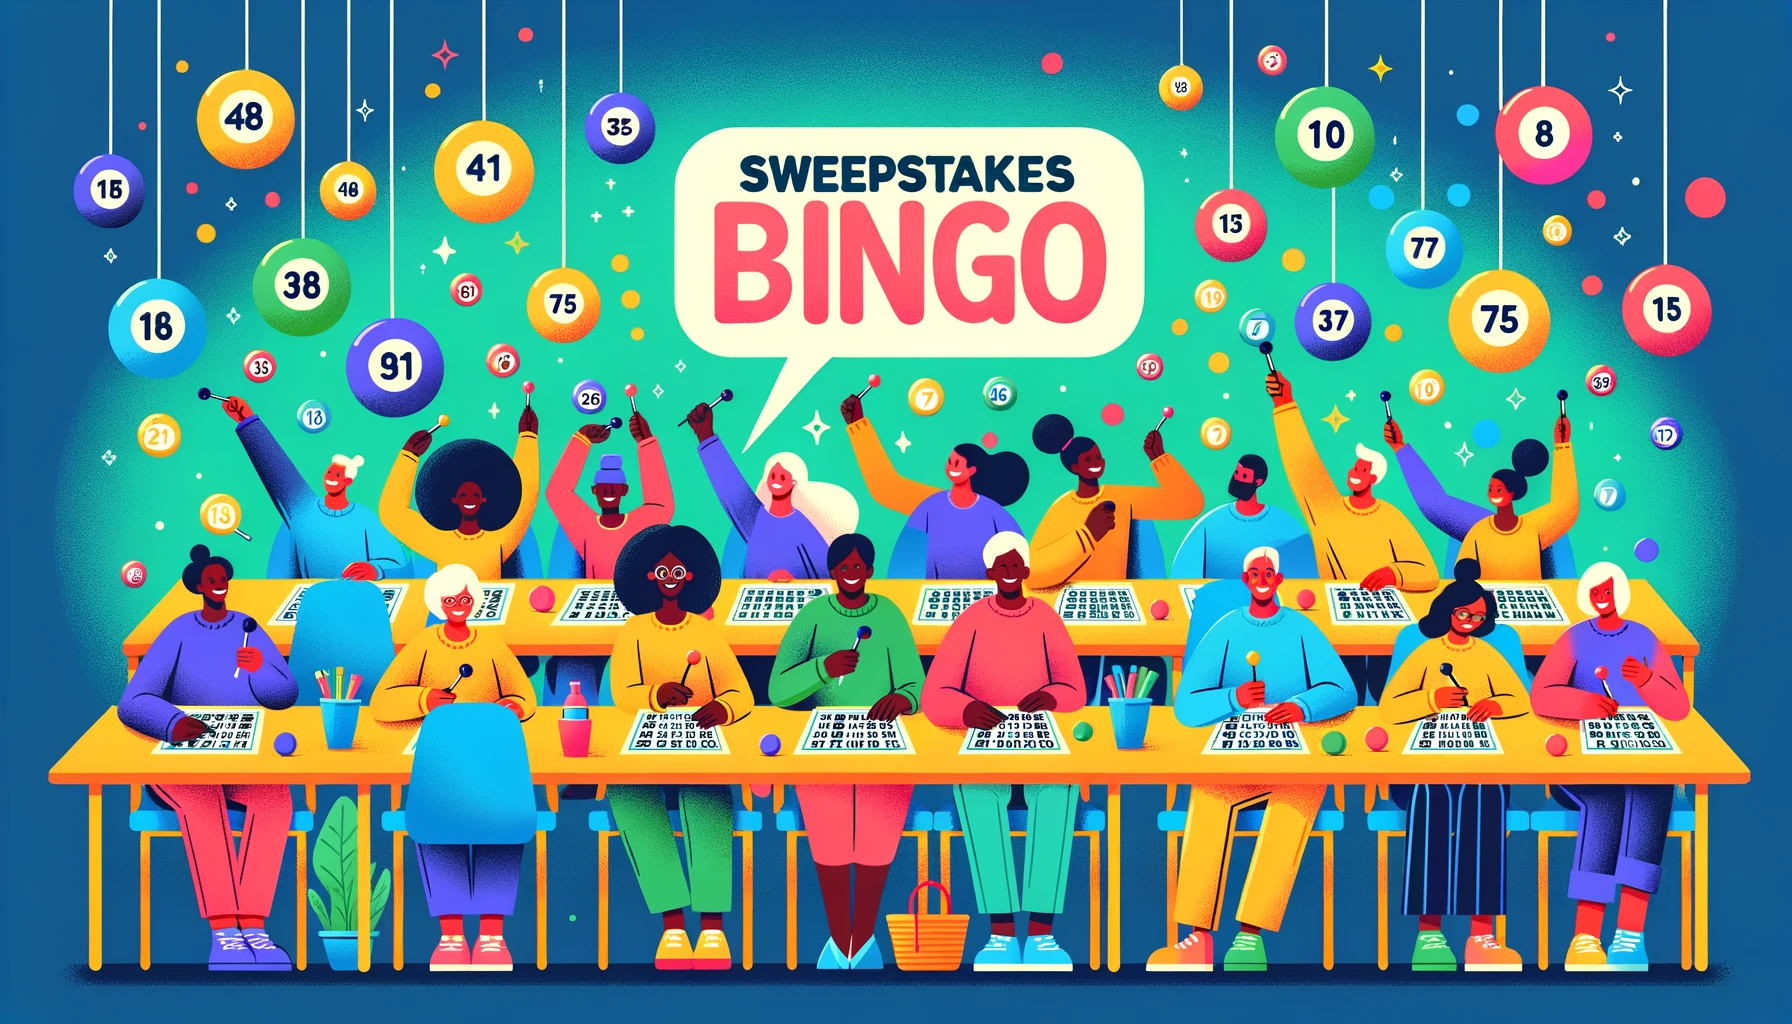 People playing sweepstakes bingo